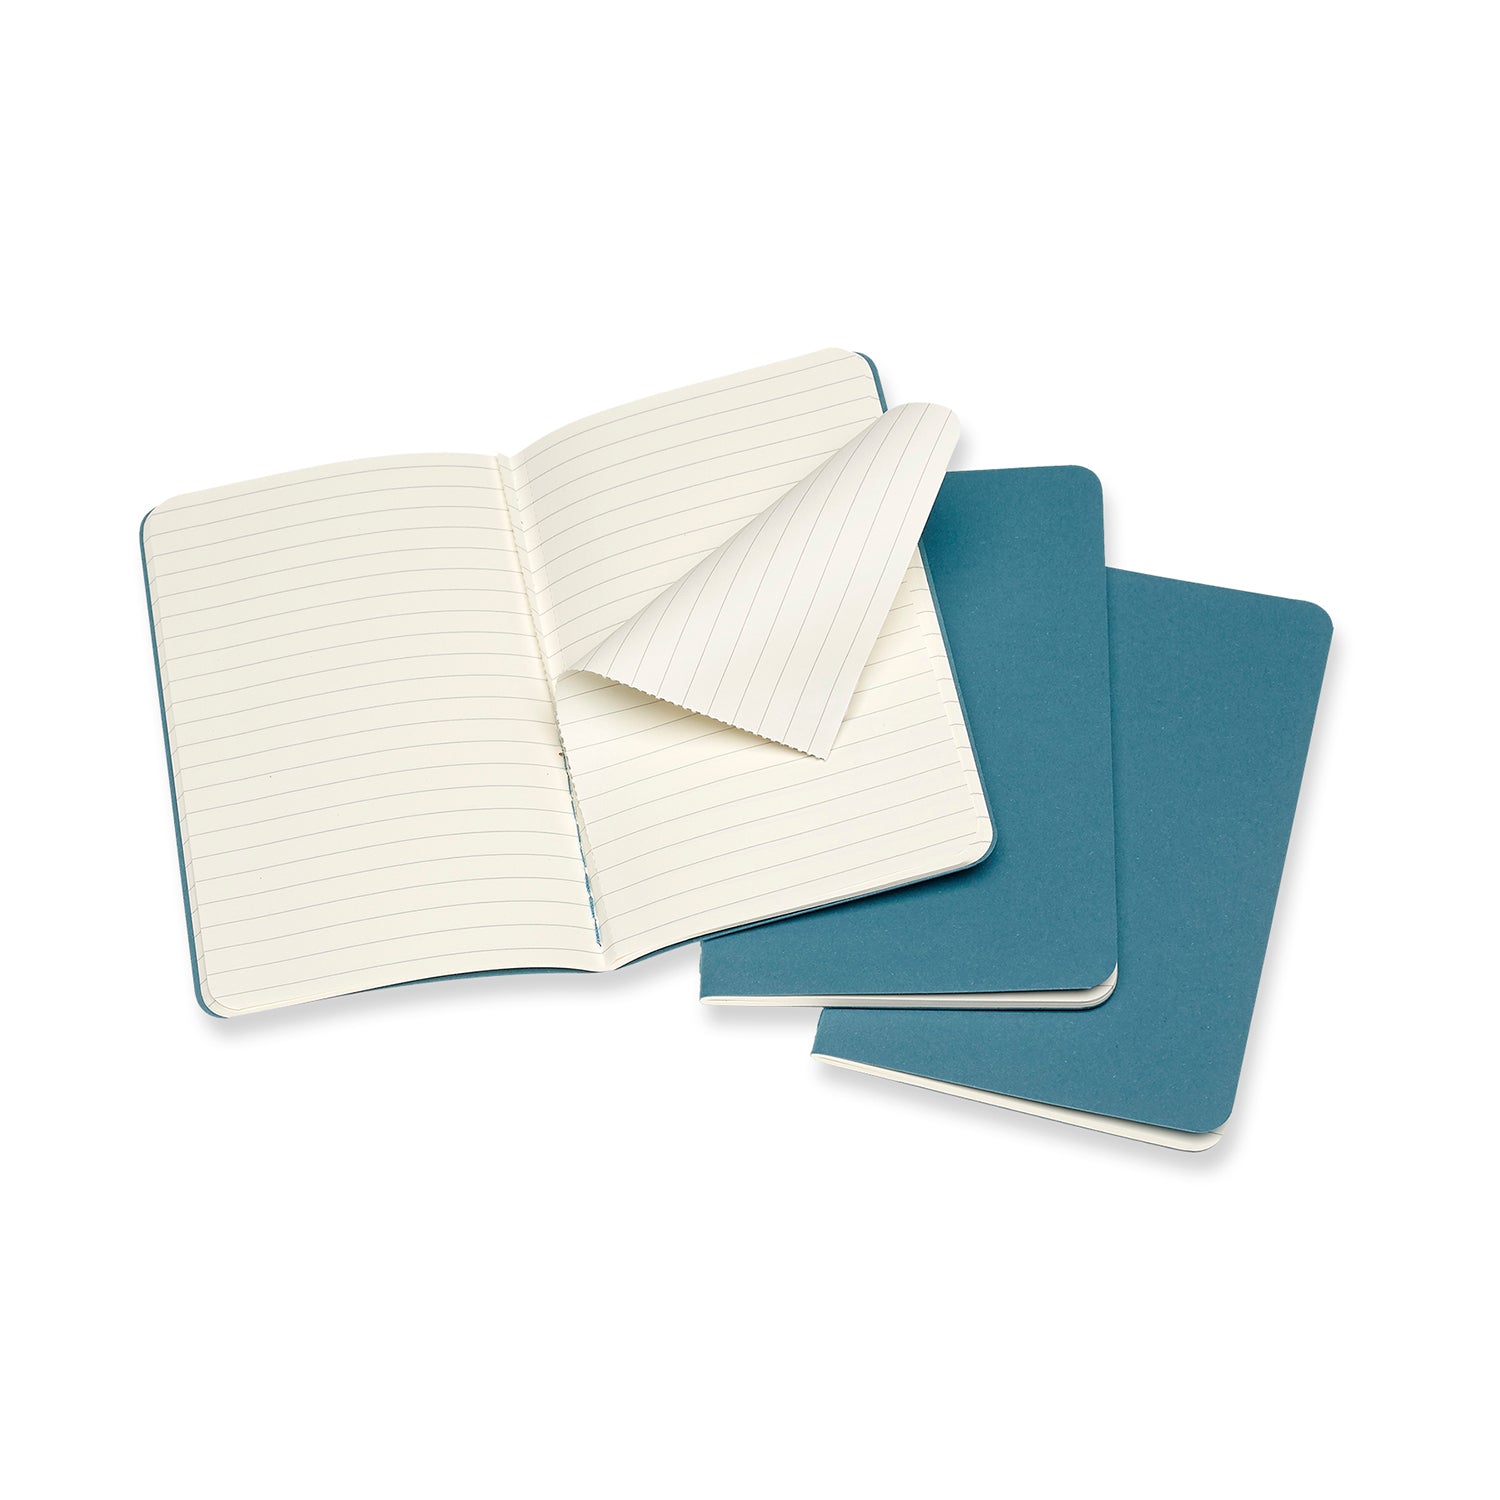 Beige Pocket Cahier Notebook - Set of 3 Black / Ruled / Pocket,Black / Plain / Pocket,Black / Dotted / Pocket,Black / Squared / Pocket,Brisk Blue / Ruled / Pocket,Brisk Blue / Plain / Pocket,Brisk Blue / Dotted / Pocket,Brisk Blue / Squared / Pocket Moleskine